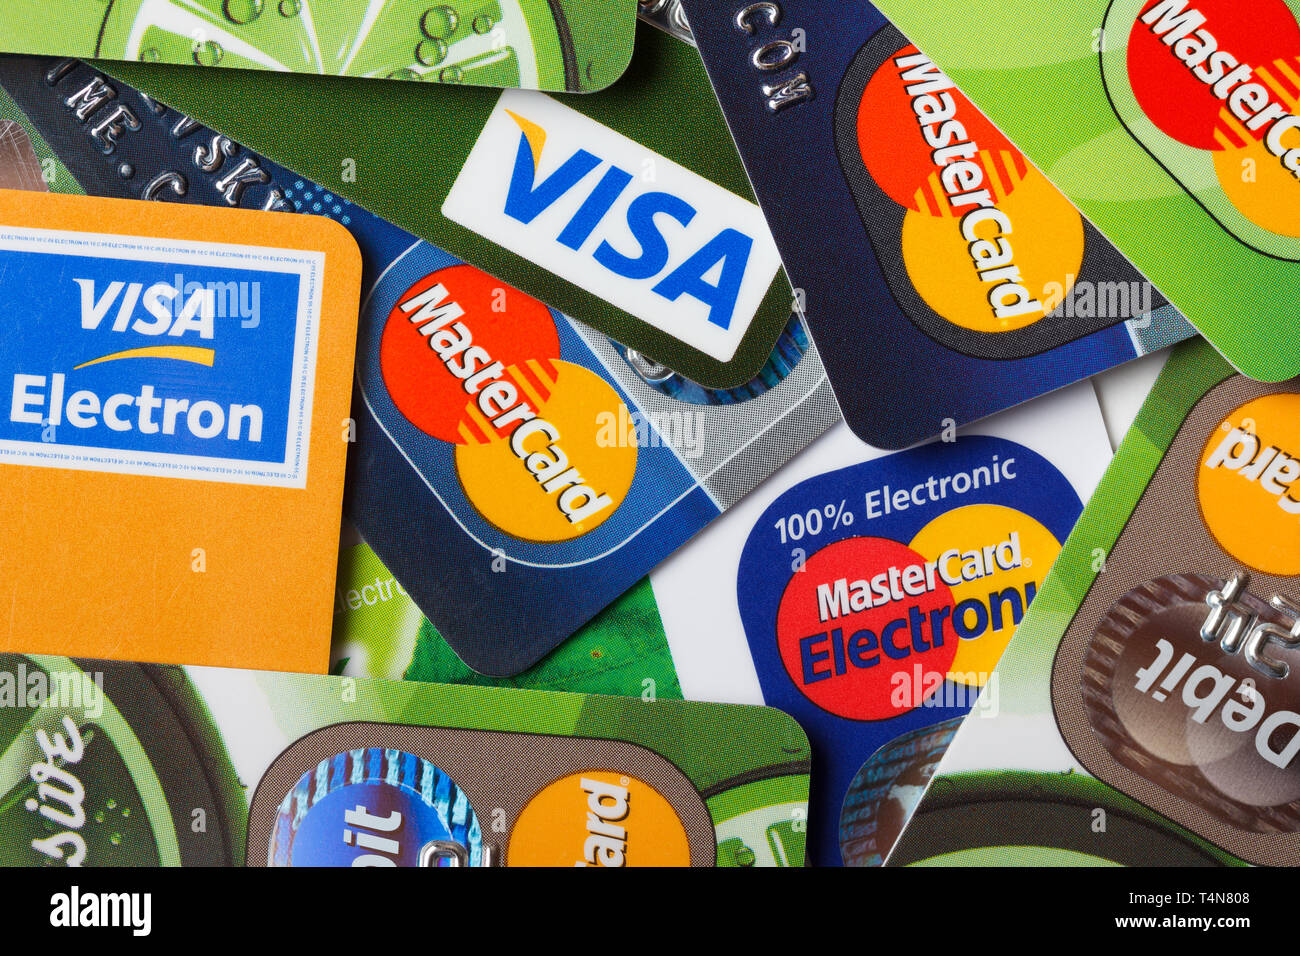 KIEV, UKRAINE - 11 Mars : Pile de cartes de crédit, Visa et MasterCard, crédit, débit et électronique, à Kiev, Ukraine, le 11 mars 2014. Banque D'Images